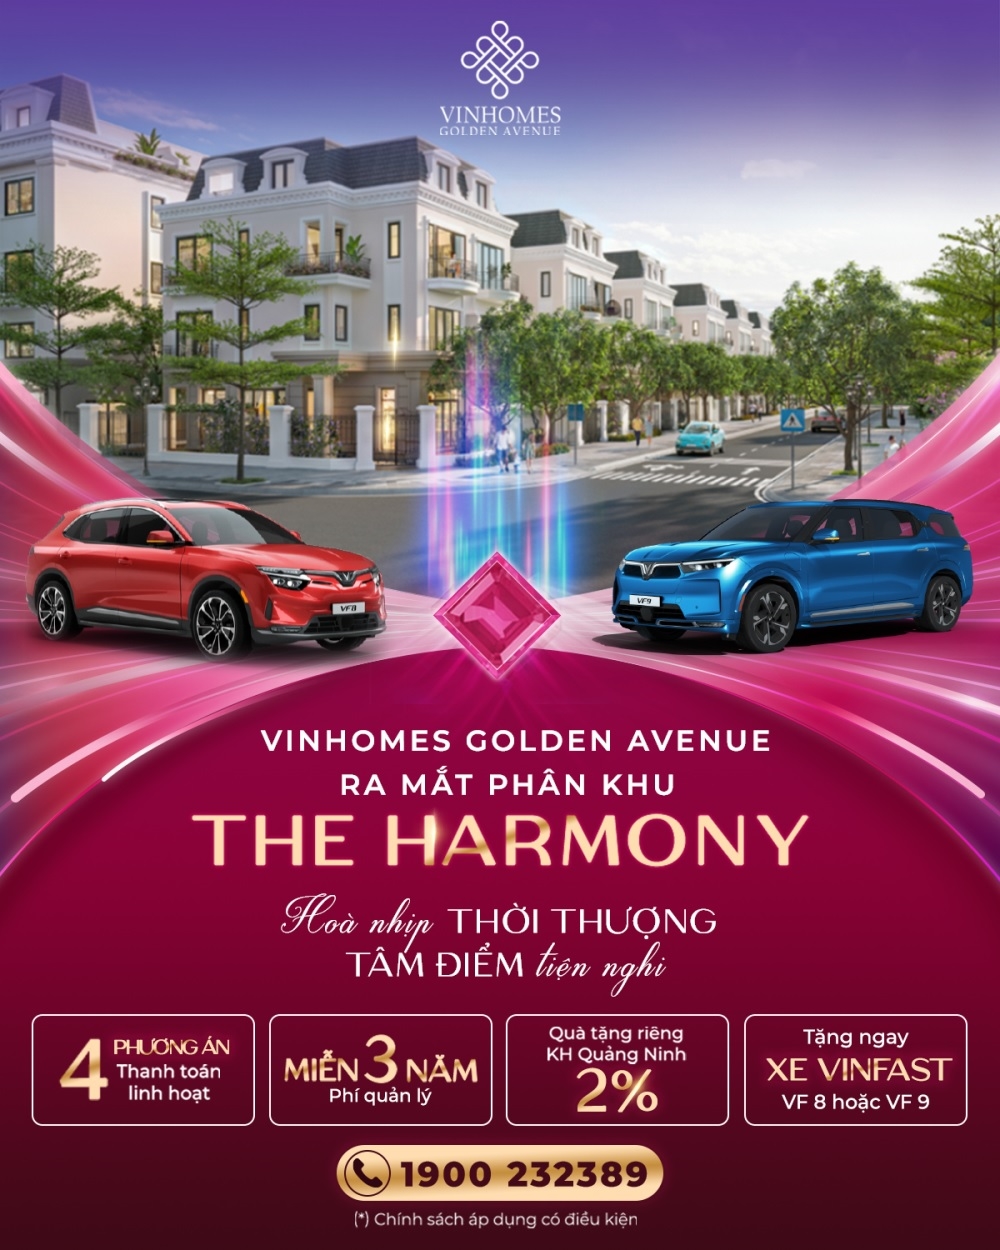 The Harmony - Đẳng cấp sống mới tại Vinhomes Golden Avenue Móng Cái 3